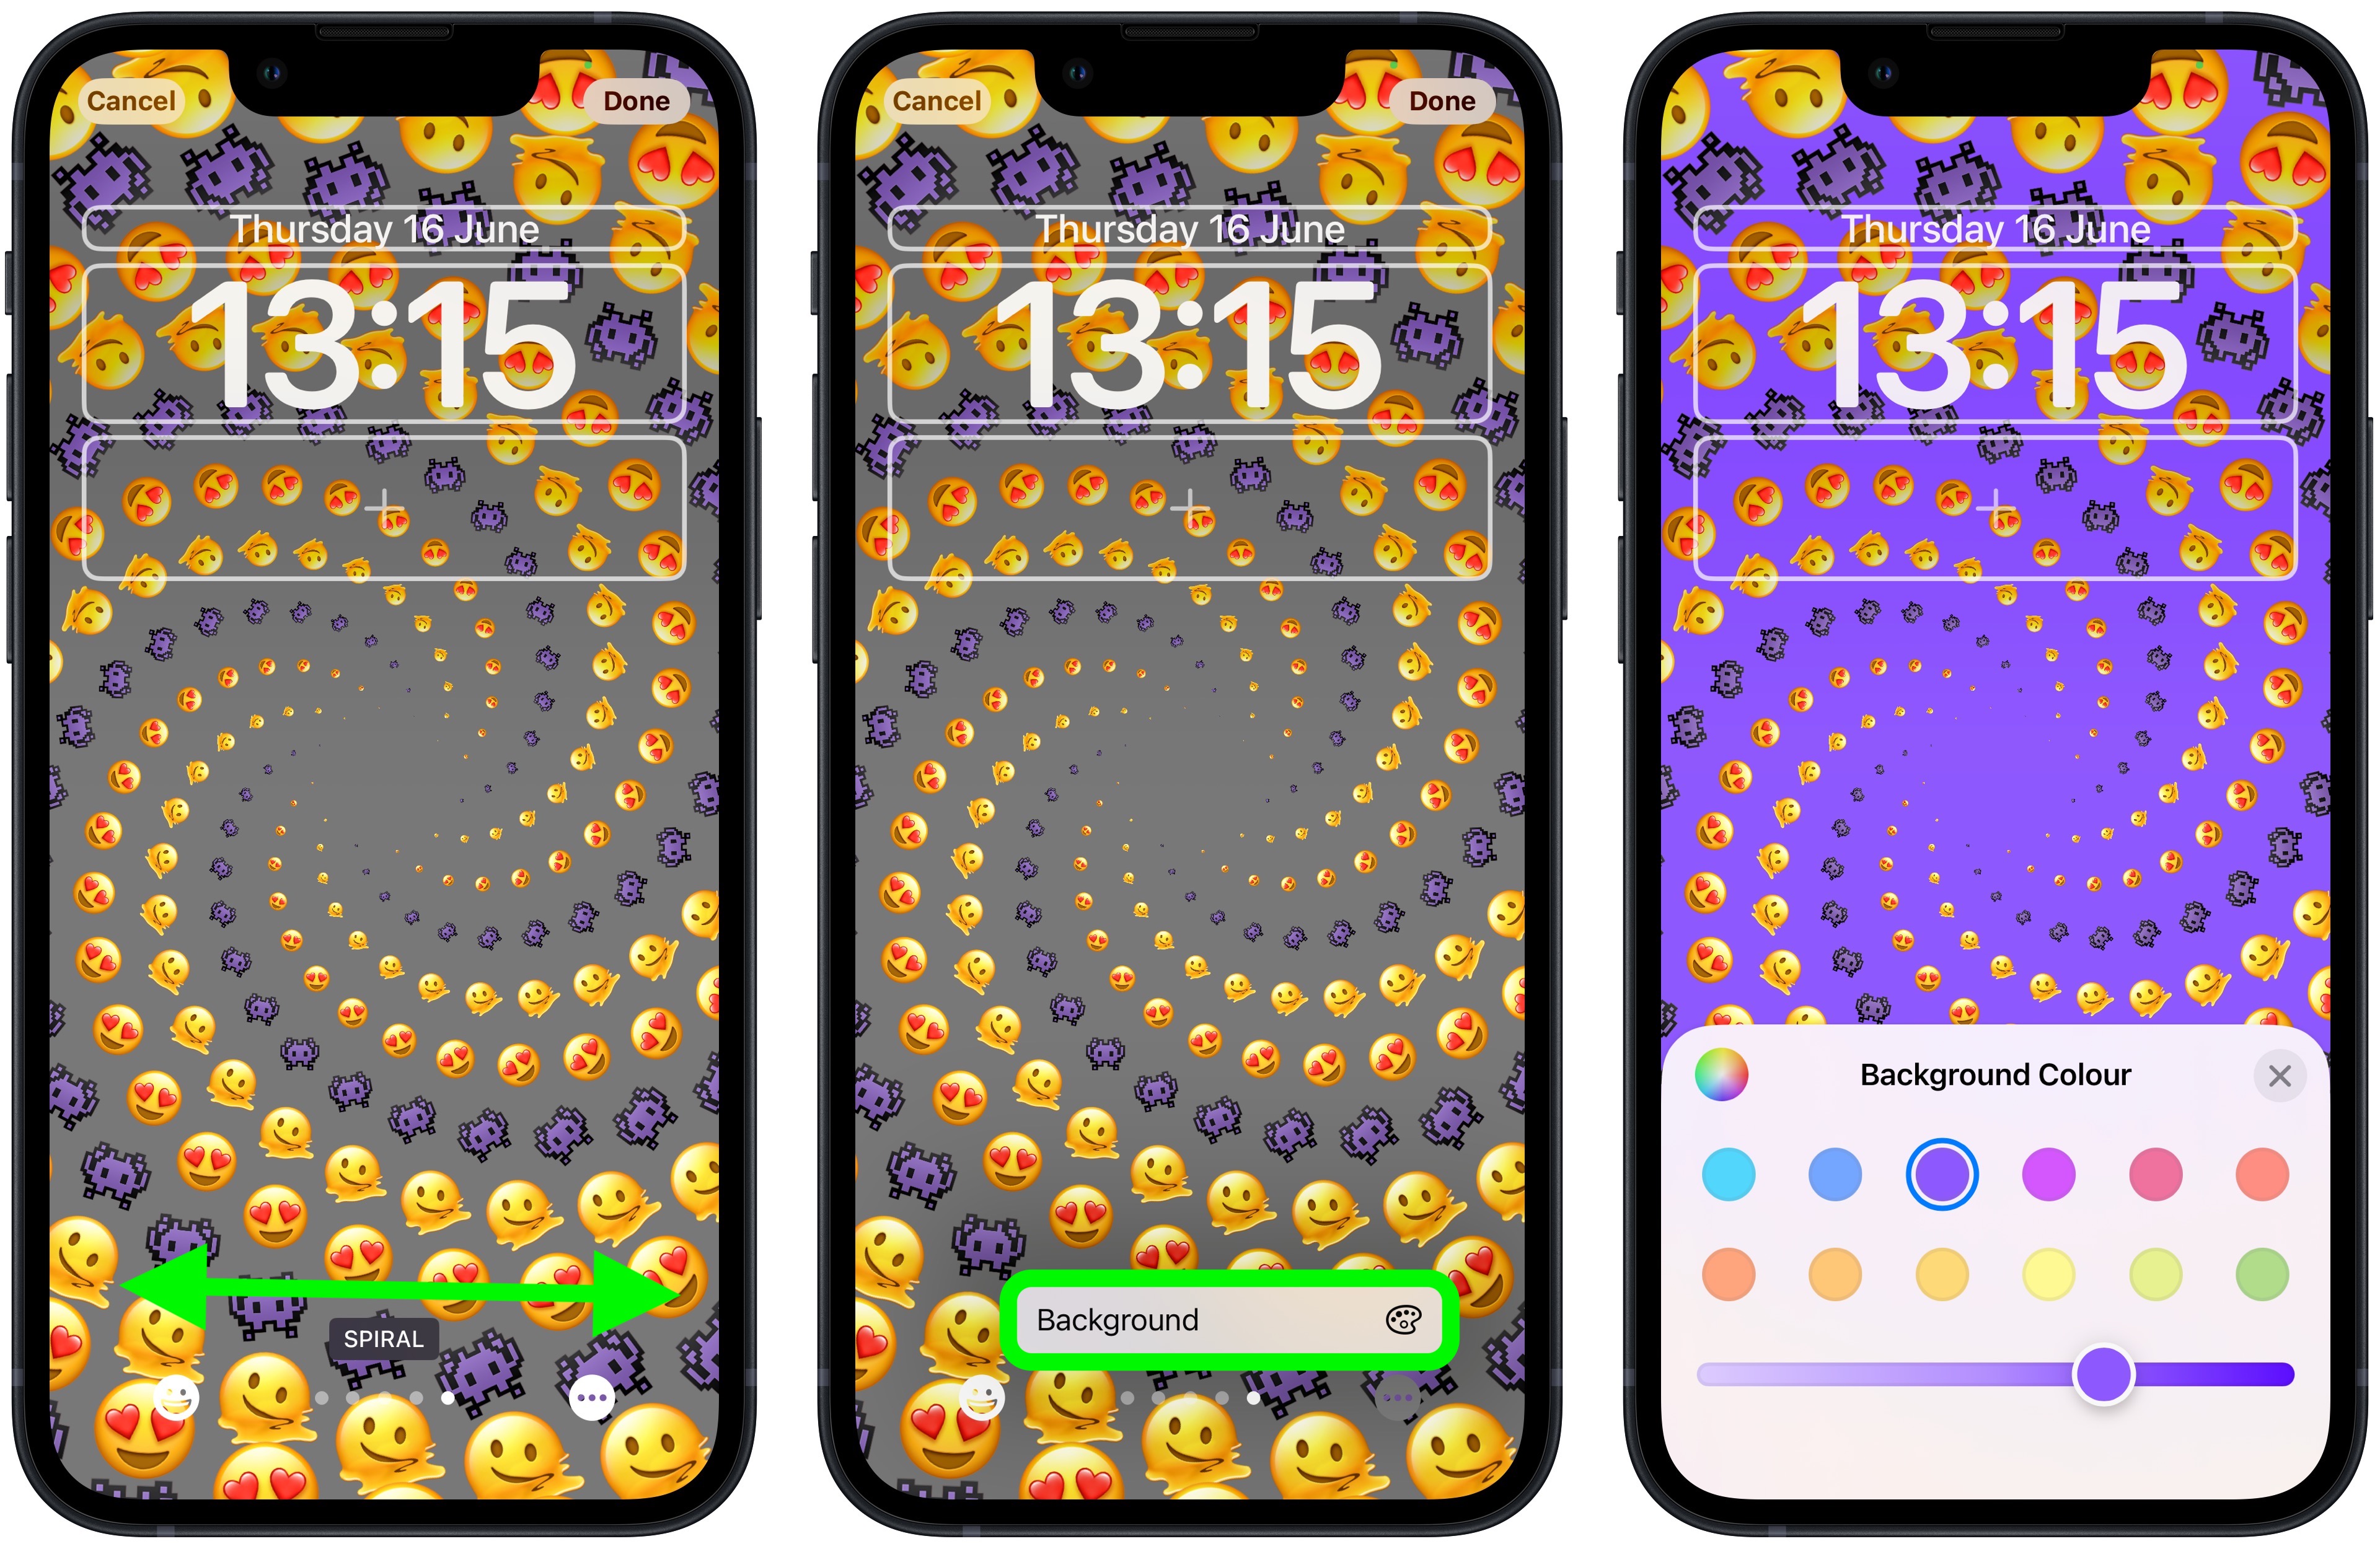 Hãy khám phá các biểu tượng cảm xúc mới nhất trên màn hình khóa iOS 16 Emoji Lock Screen để tạo cảm giác vui vẻ, thú vị và đầy tính năng.